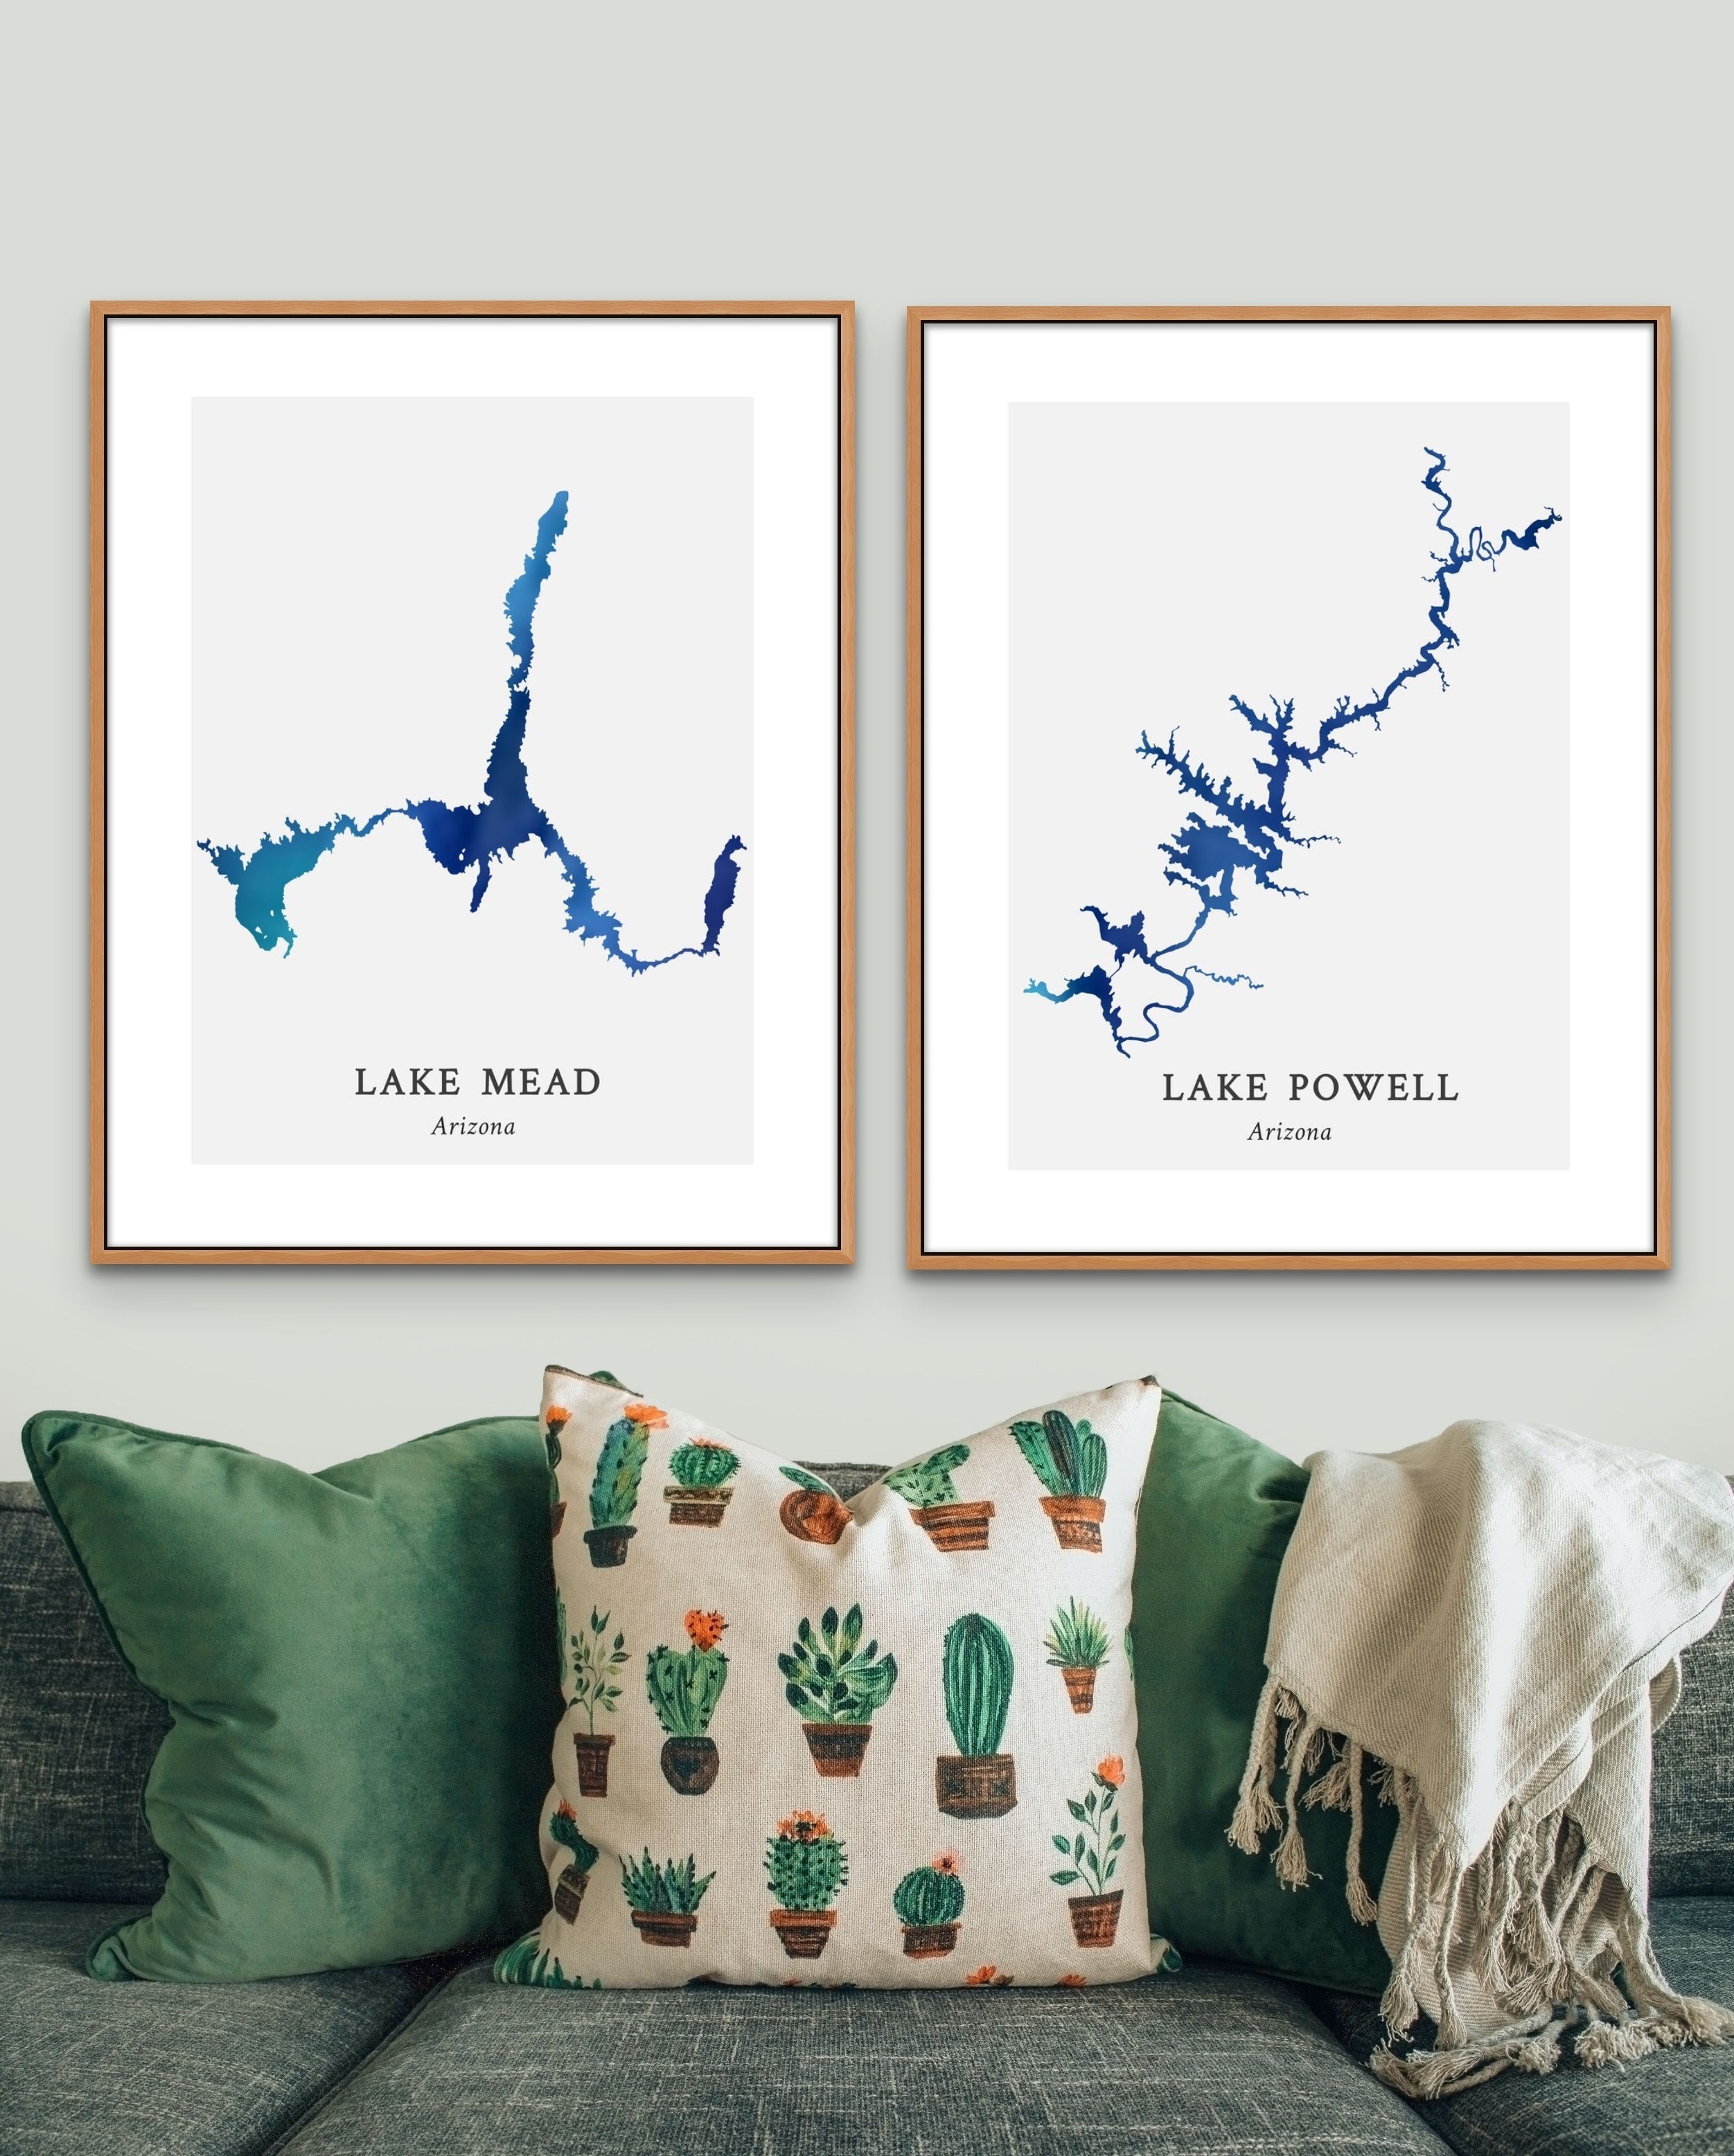 New York - Lake Tiorati Map